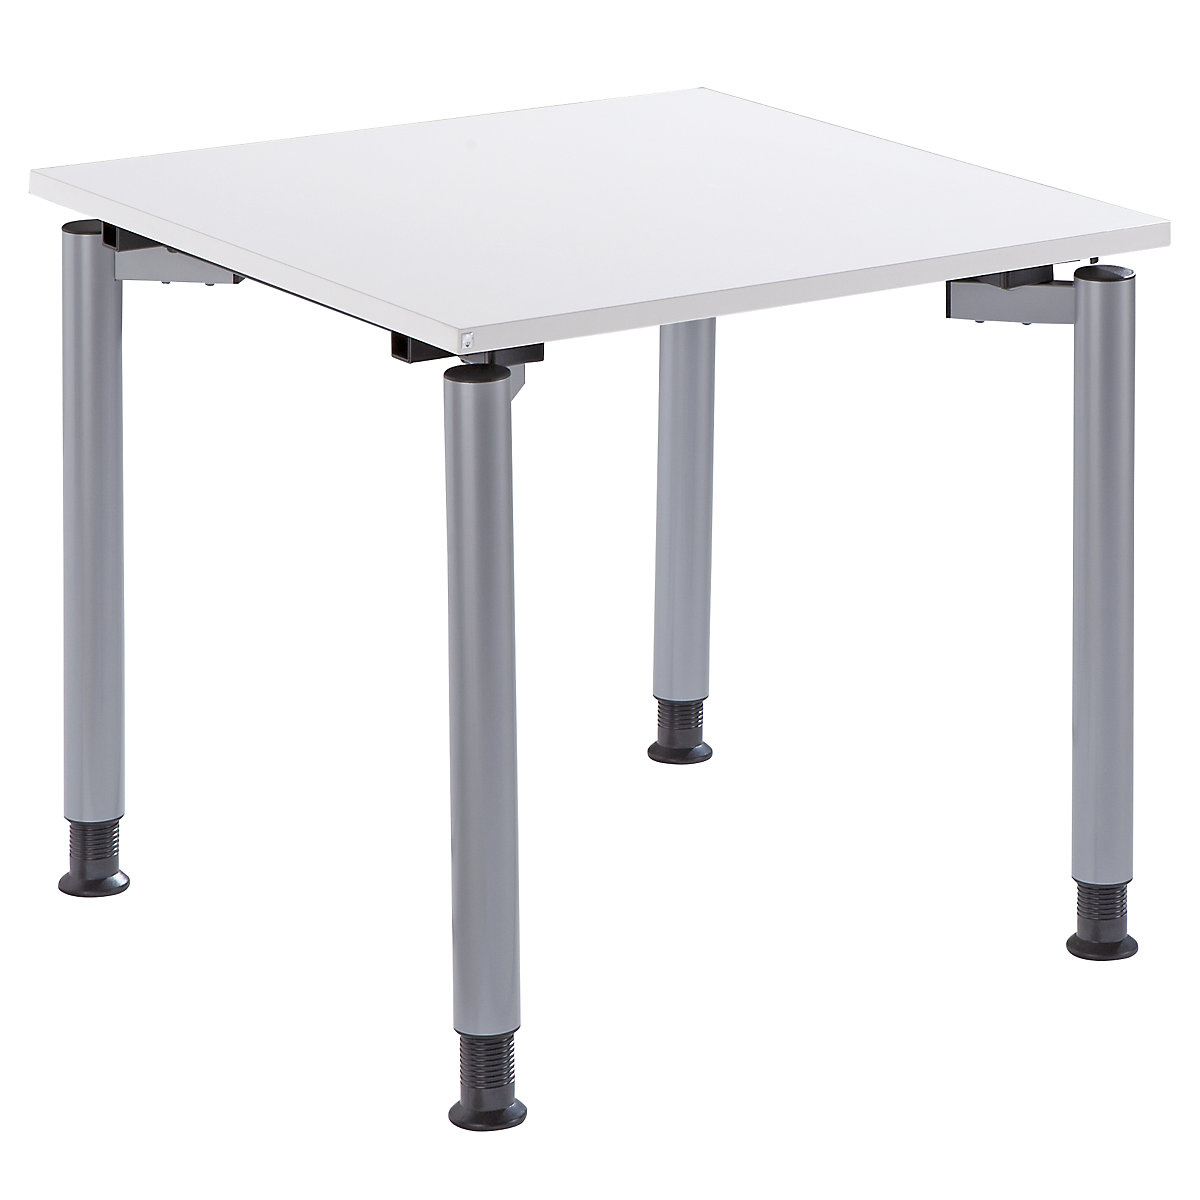 THEA Pisaći stol s postoljem s 4 noge, visina 680 – 820 mm, širina 800 mm, u starinski bijeloj boji